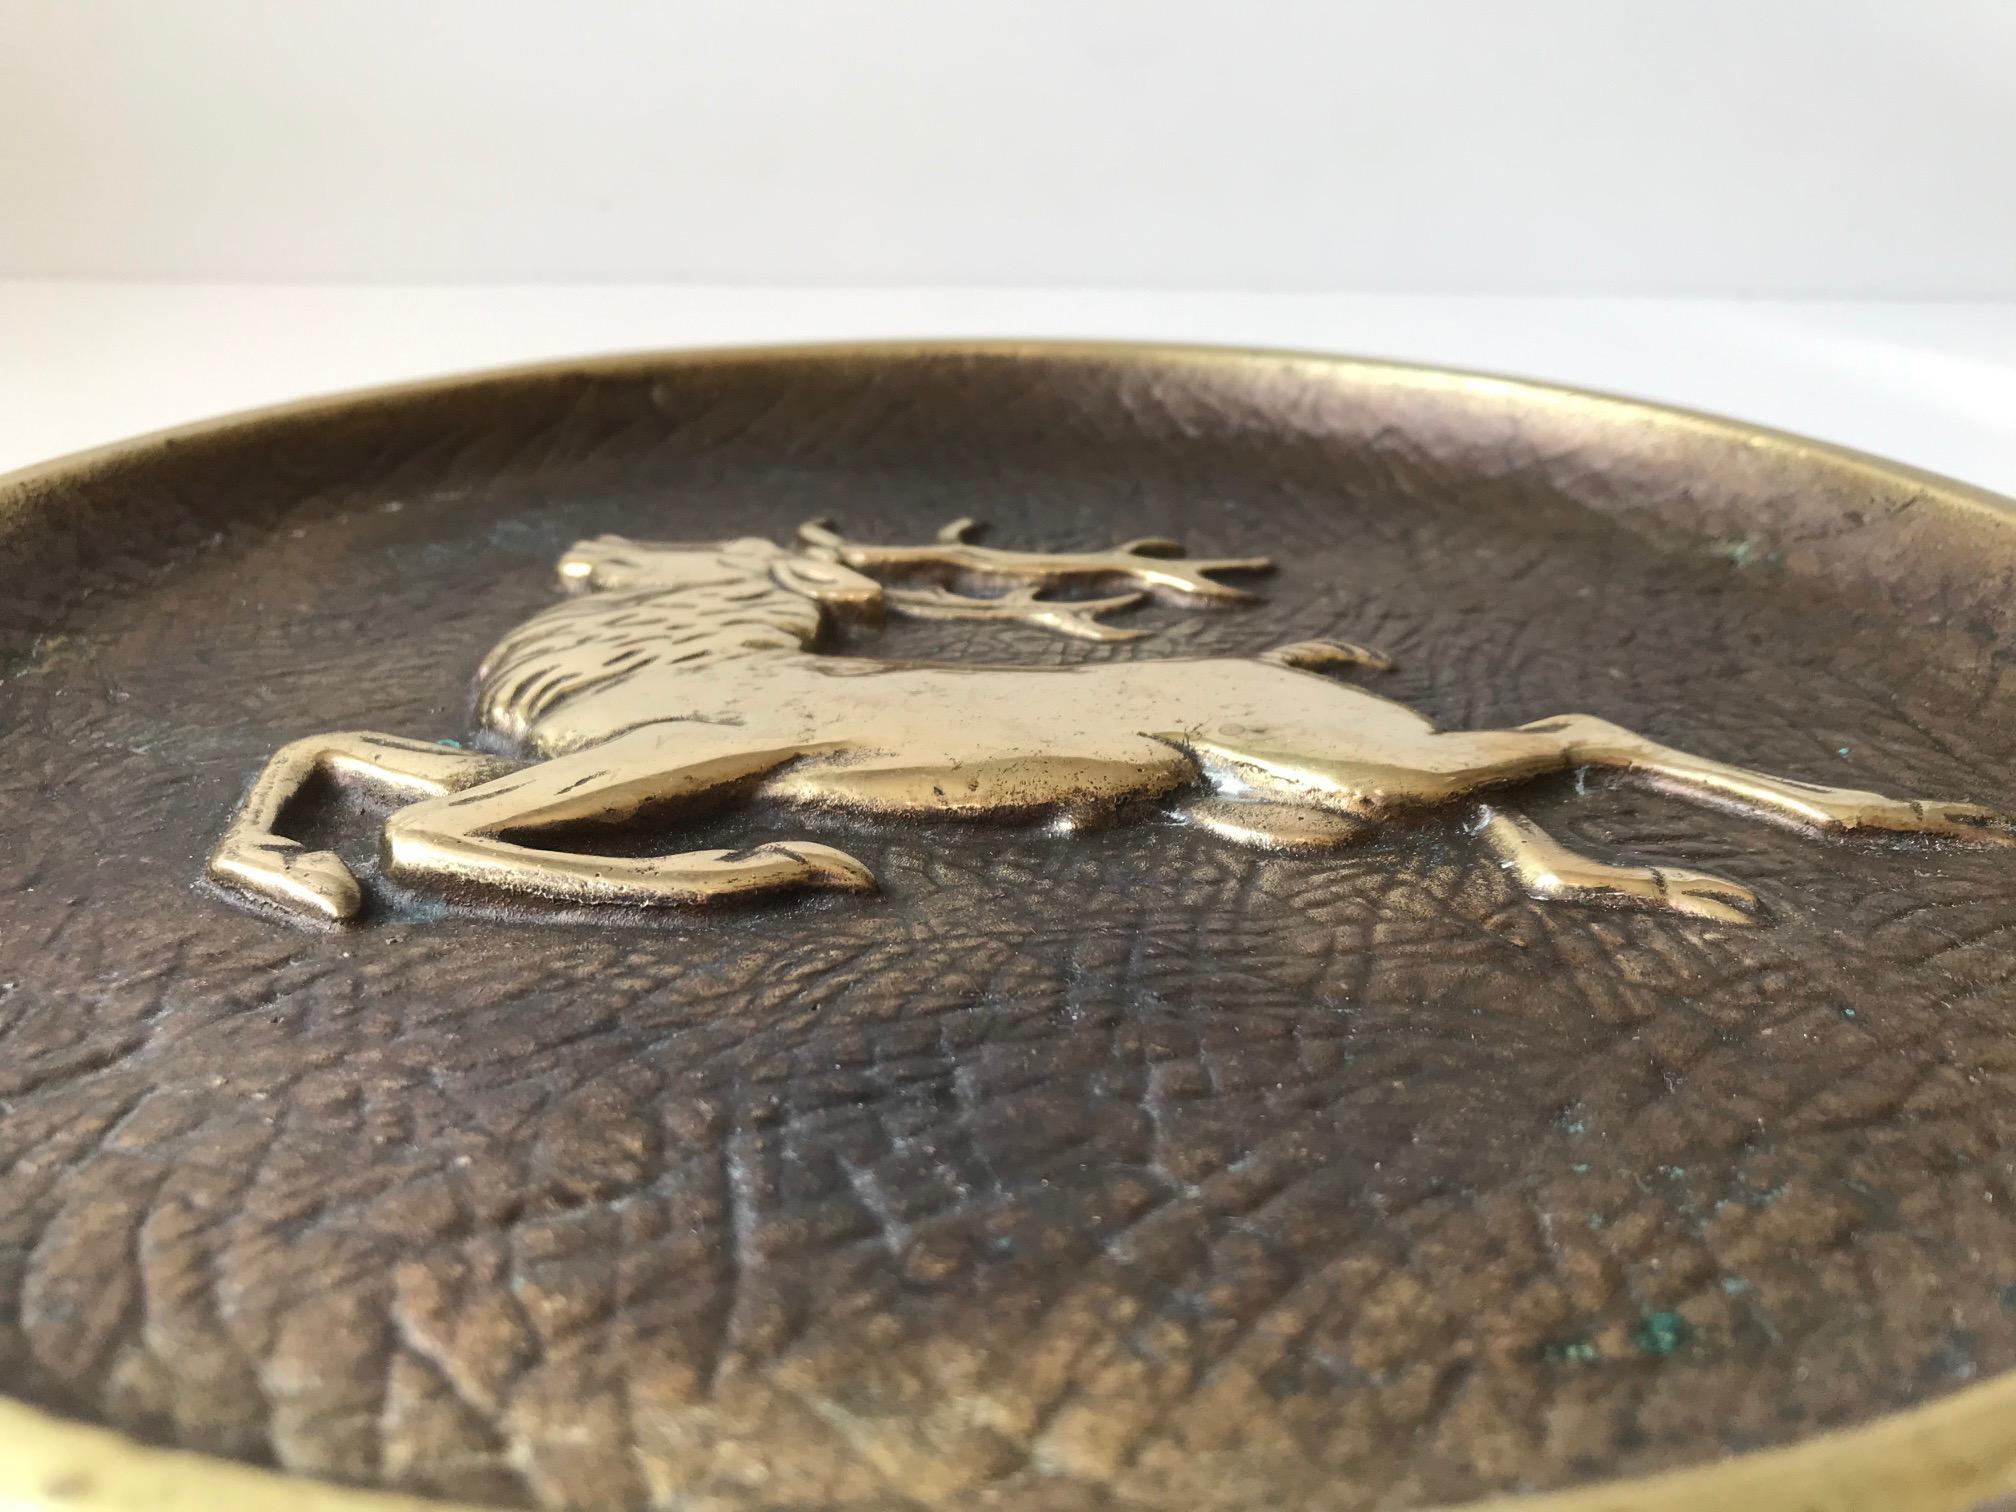 Lourd bol/plat en bronze massif avec texture en peau d'éléphant et motif central d'un cerf stylisé en relief. Il a été conçu et fabriqué par Crown à Copenhague, au Danemark, dans les années 1930. À la même époque, Just Andersen a pris le monde